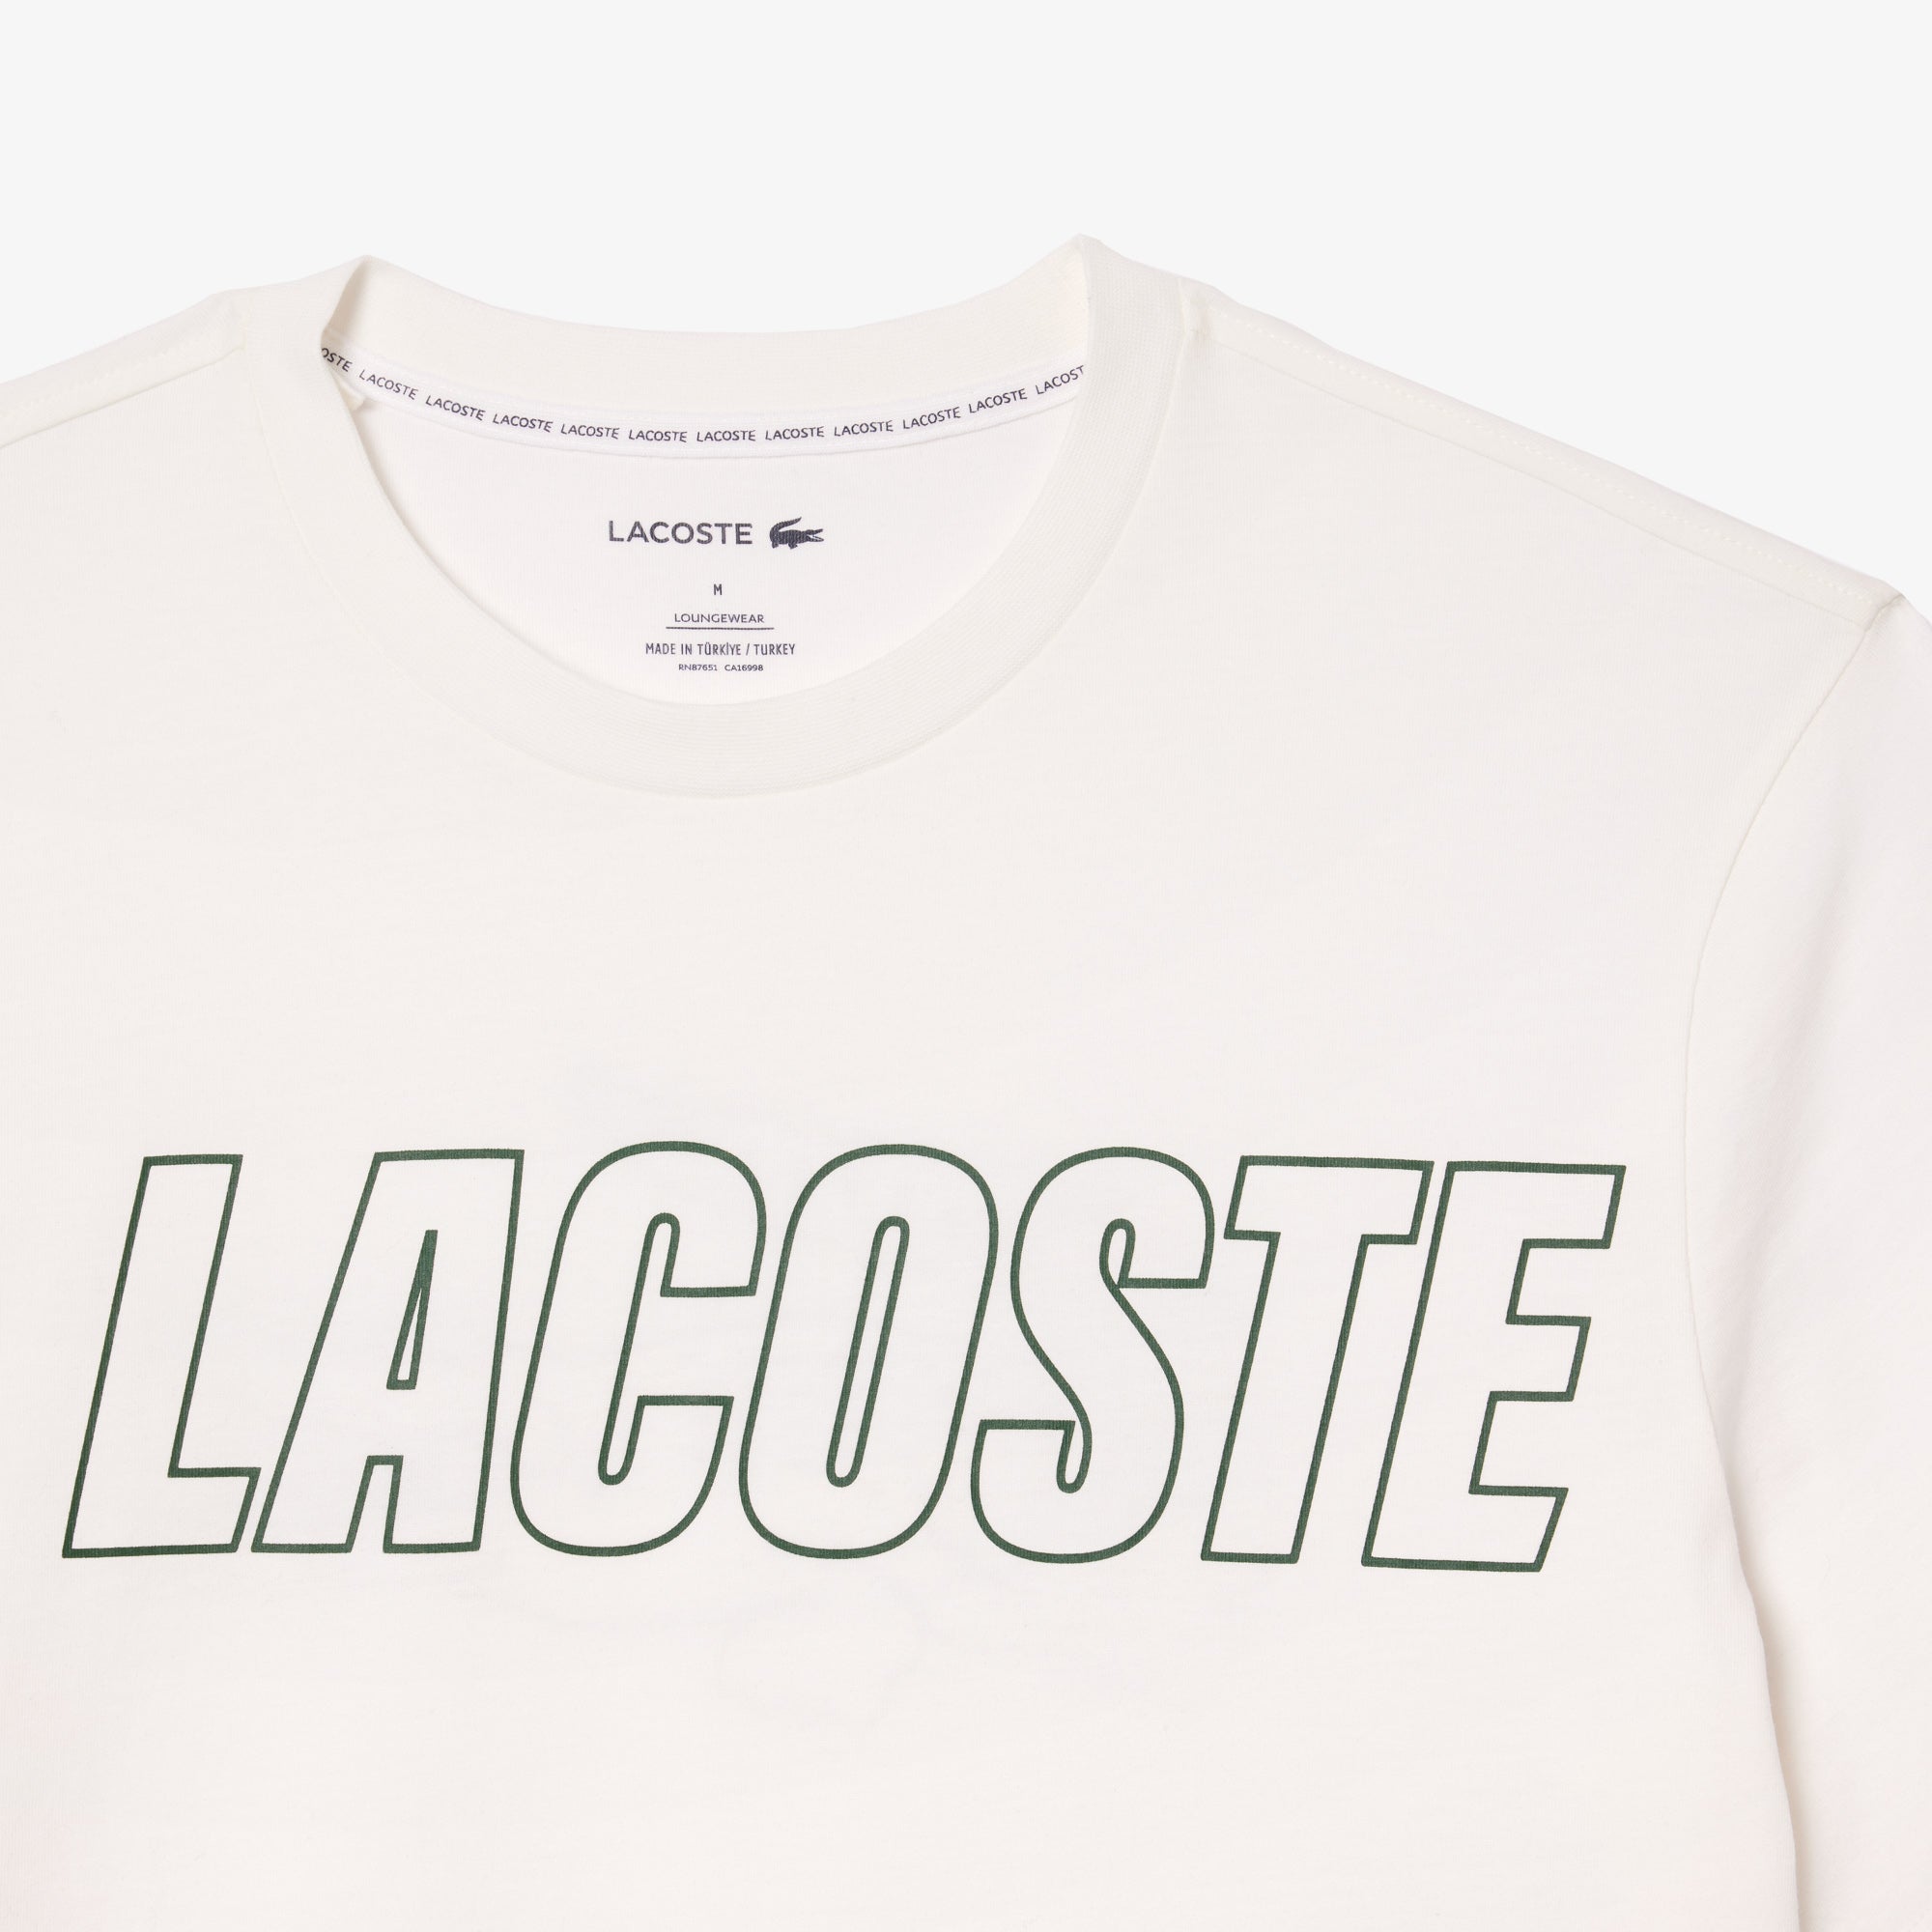 Camiseta Lacoste con Detalle de la Marca a Contraste